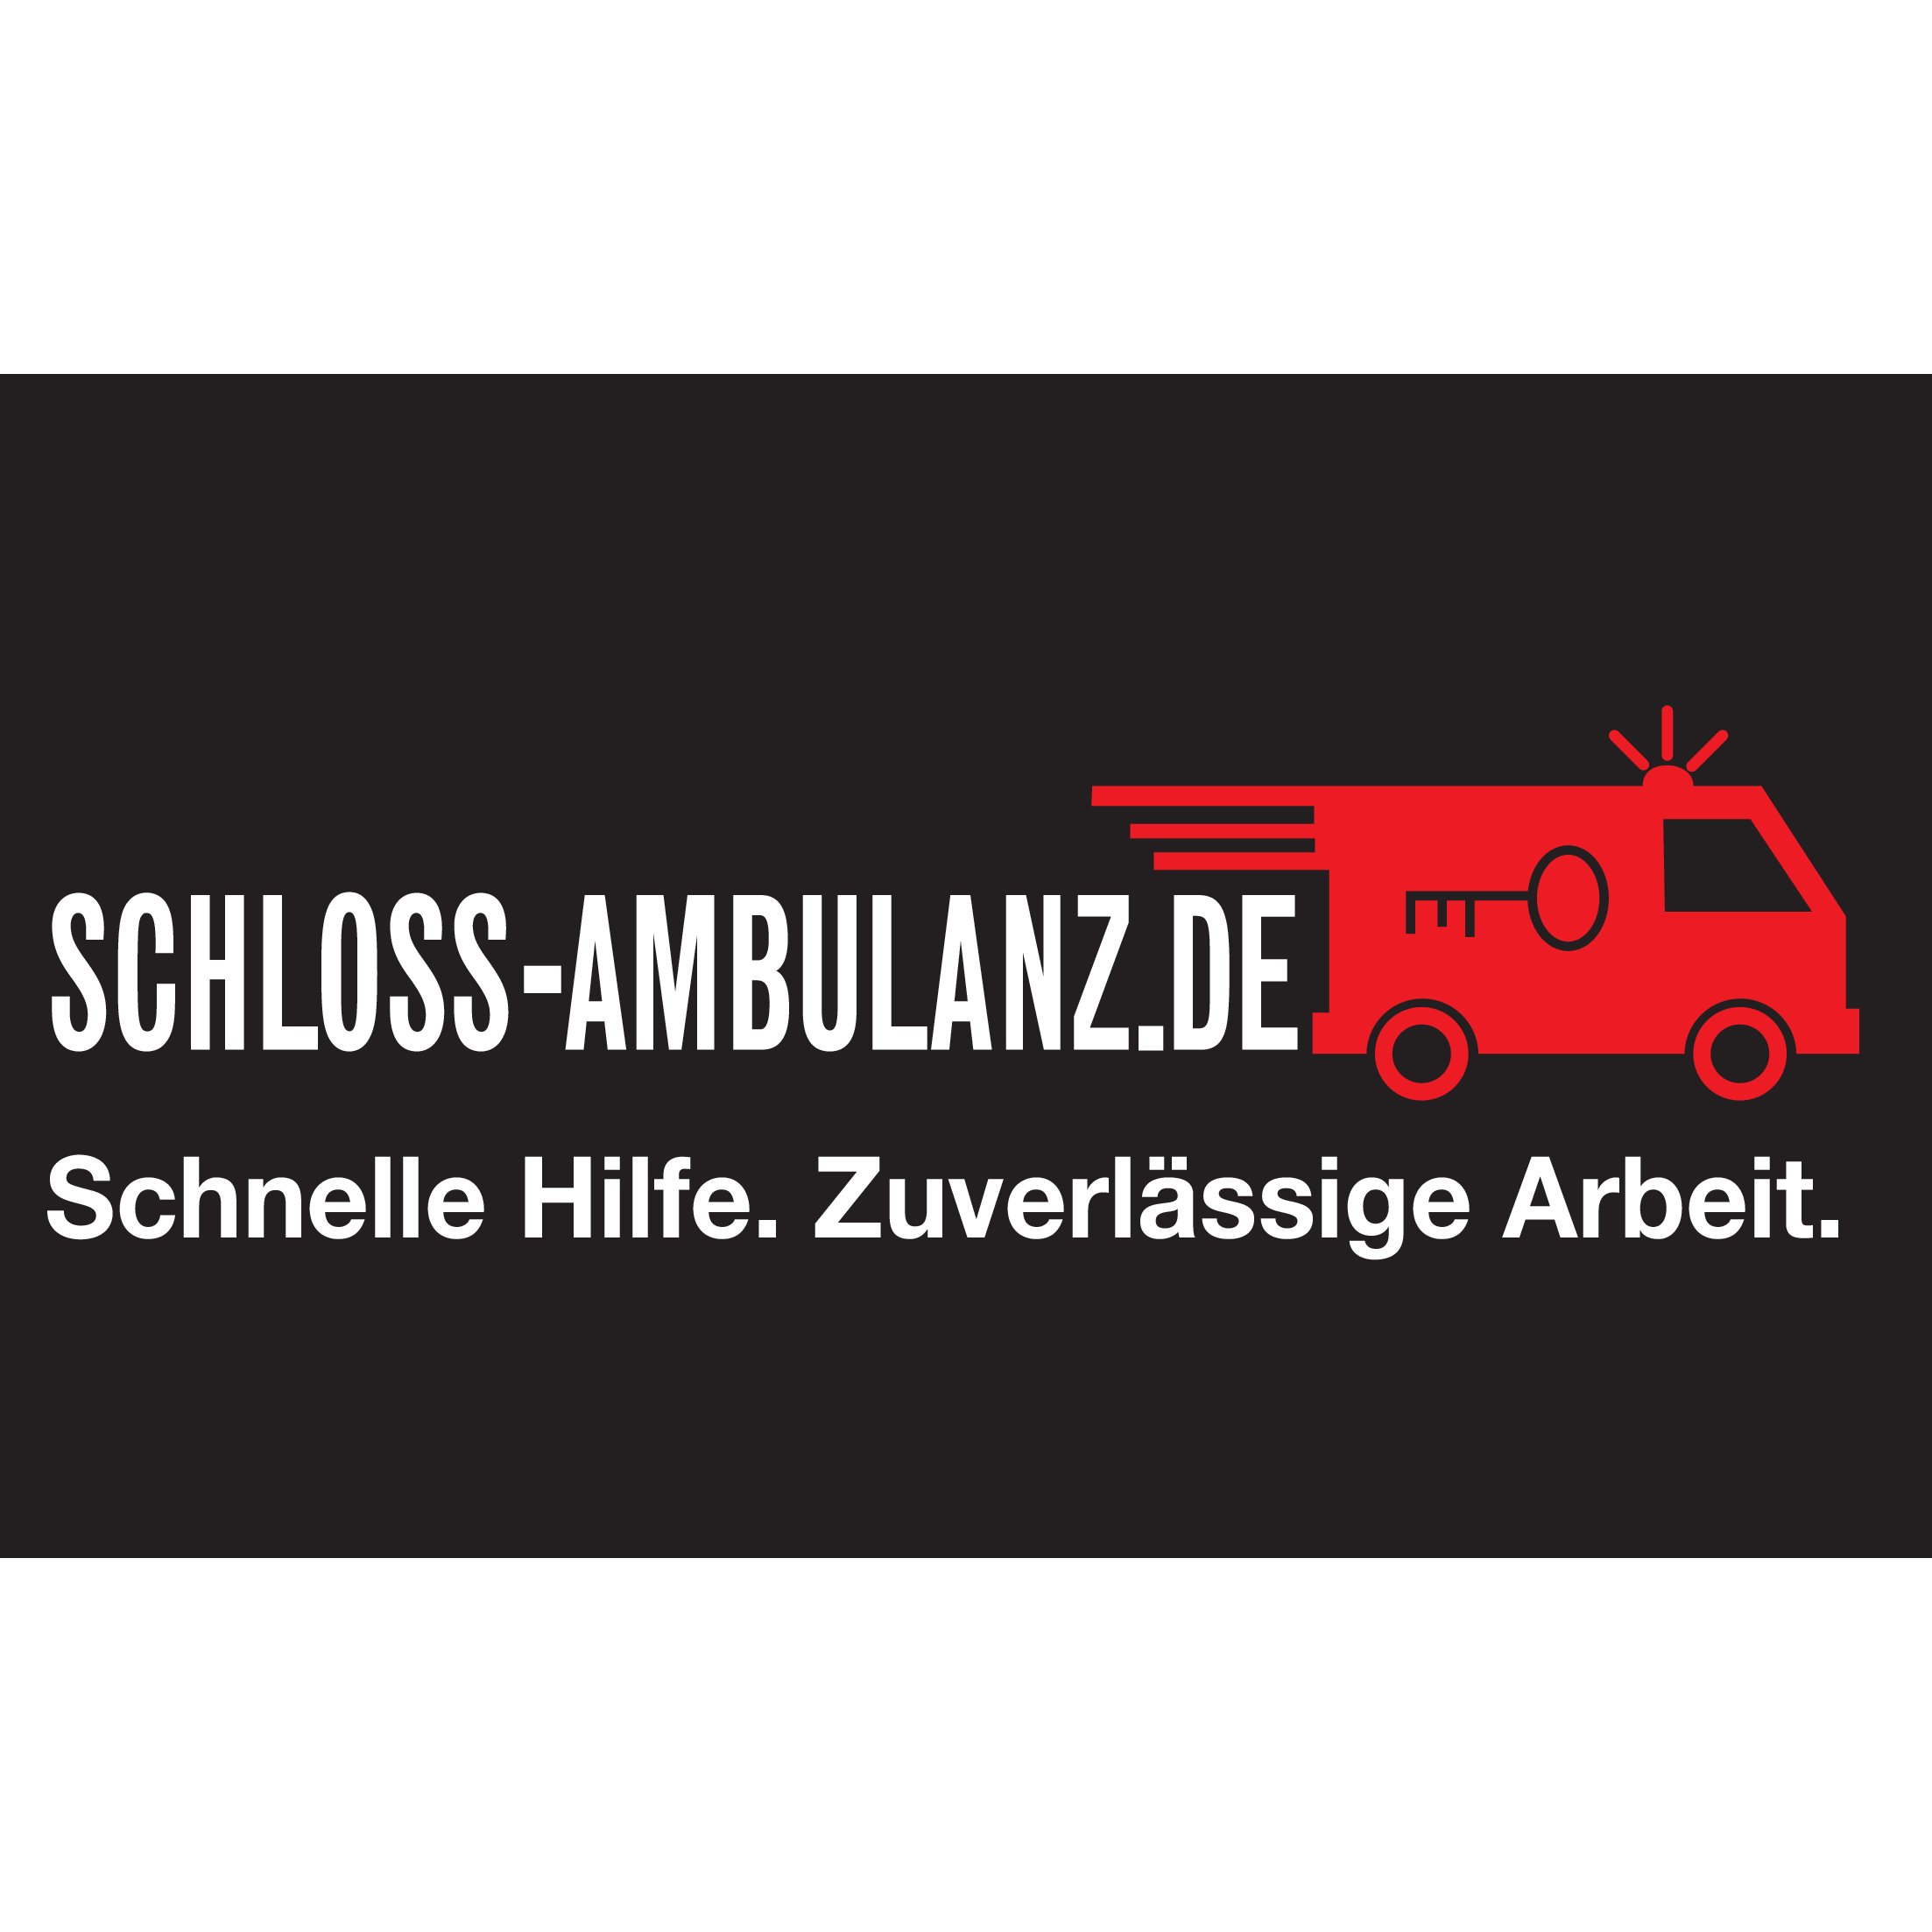 Schloss-Ambulanz.de in Duisburg - Logo